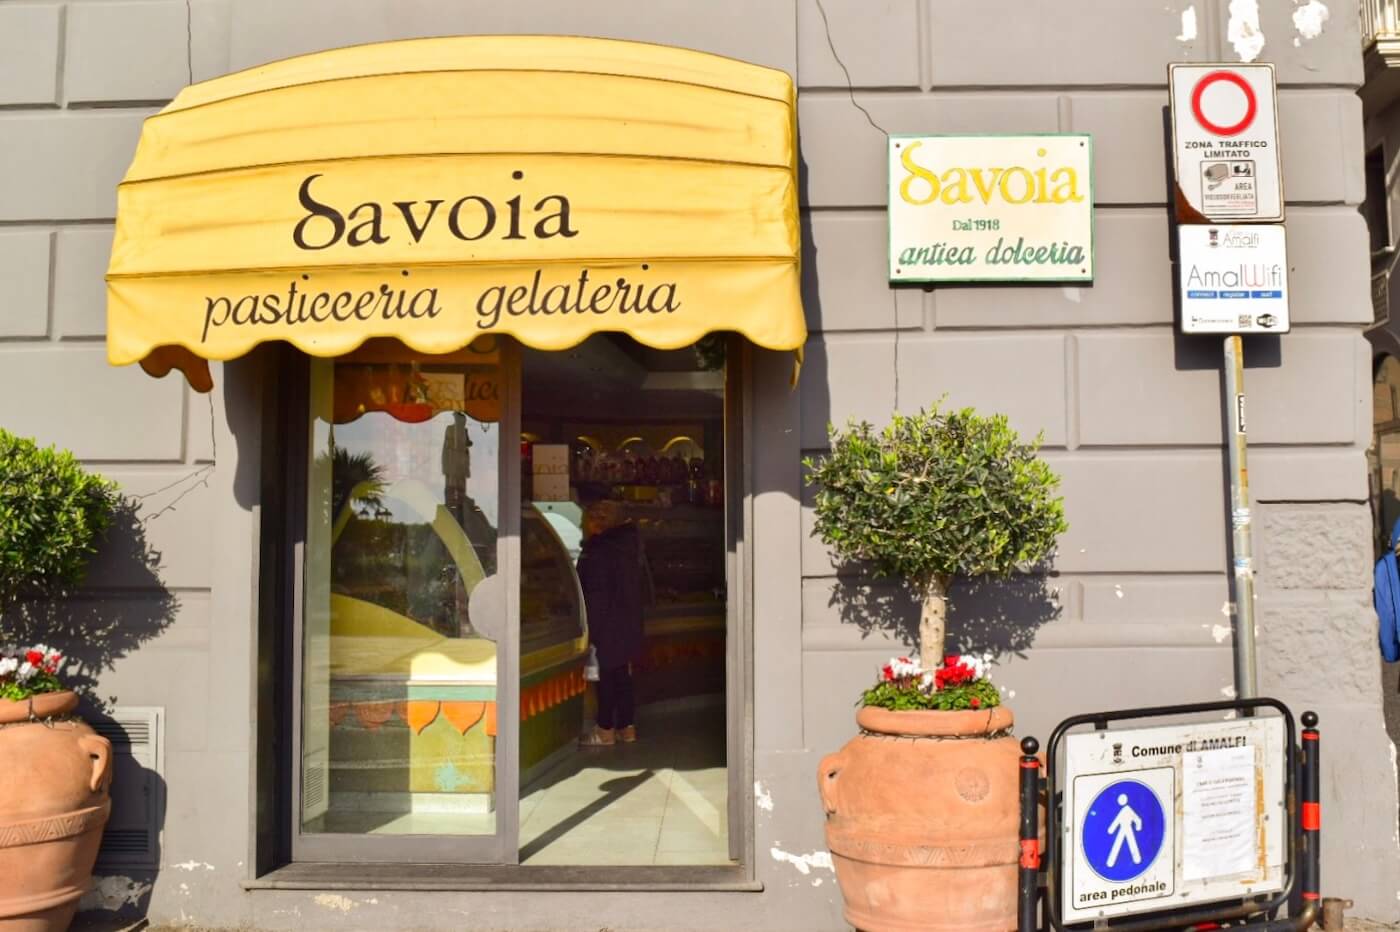 Pasticceria Savoia（パスティチェリア・サヴォイア）の外観